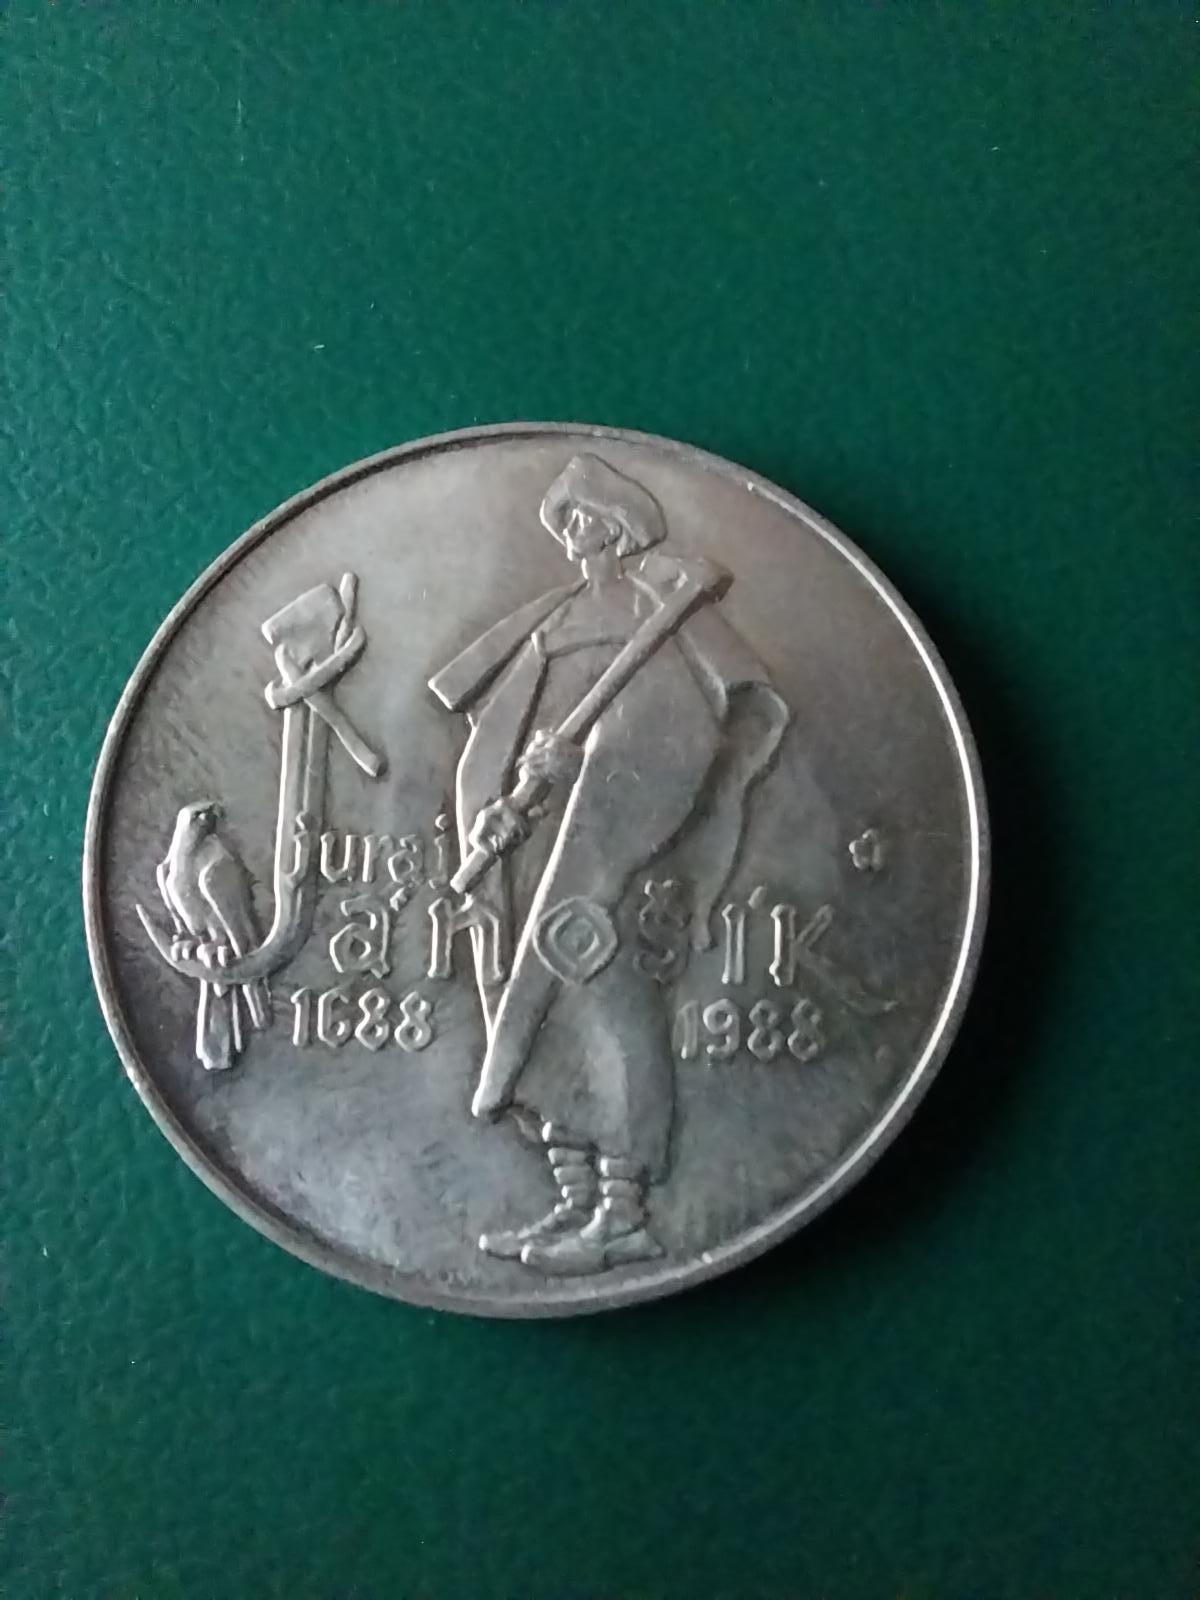 Strieborná pamätná minca 50 kčs 1988 Juraj Jánošík - Numizmatika